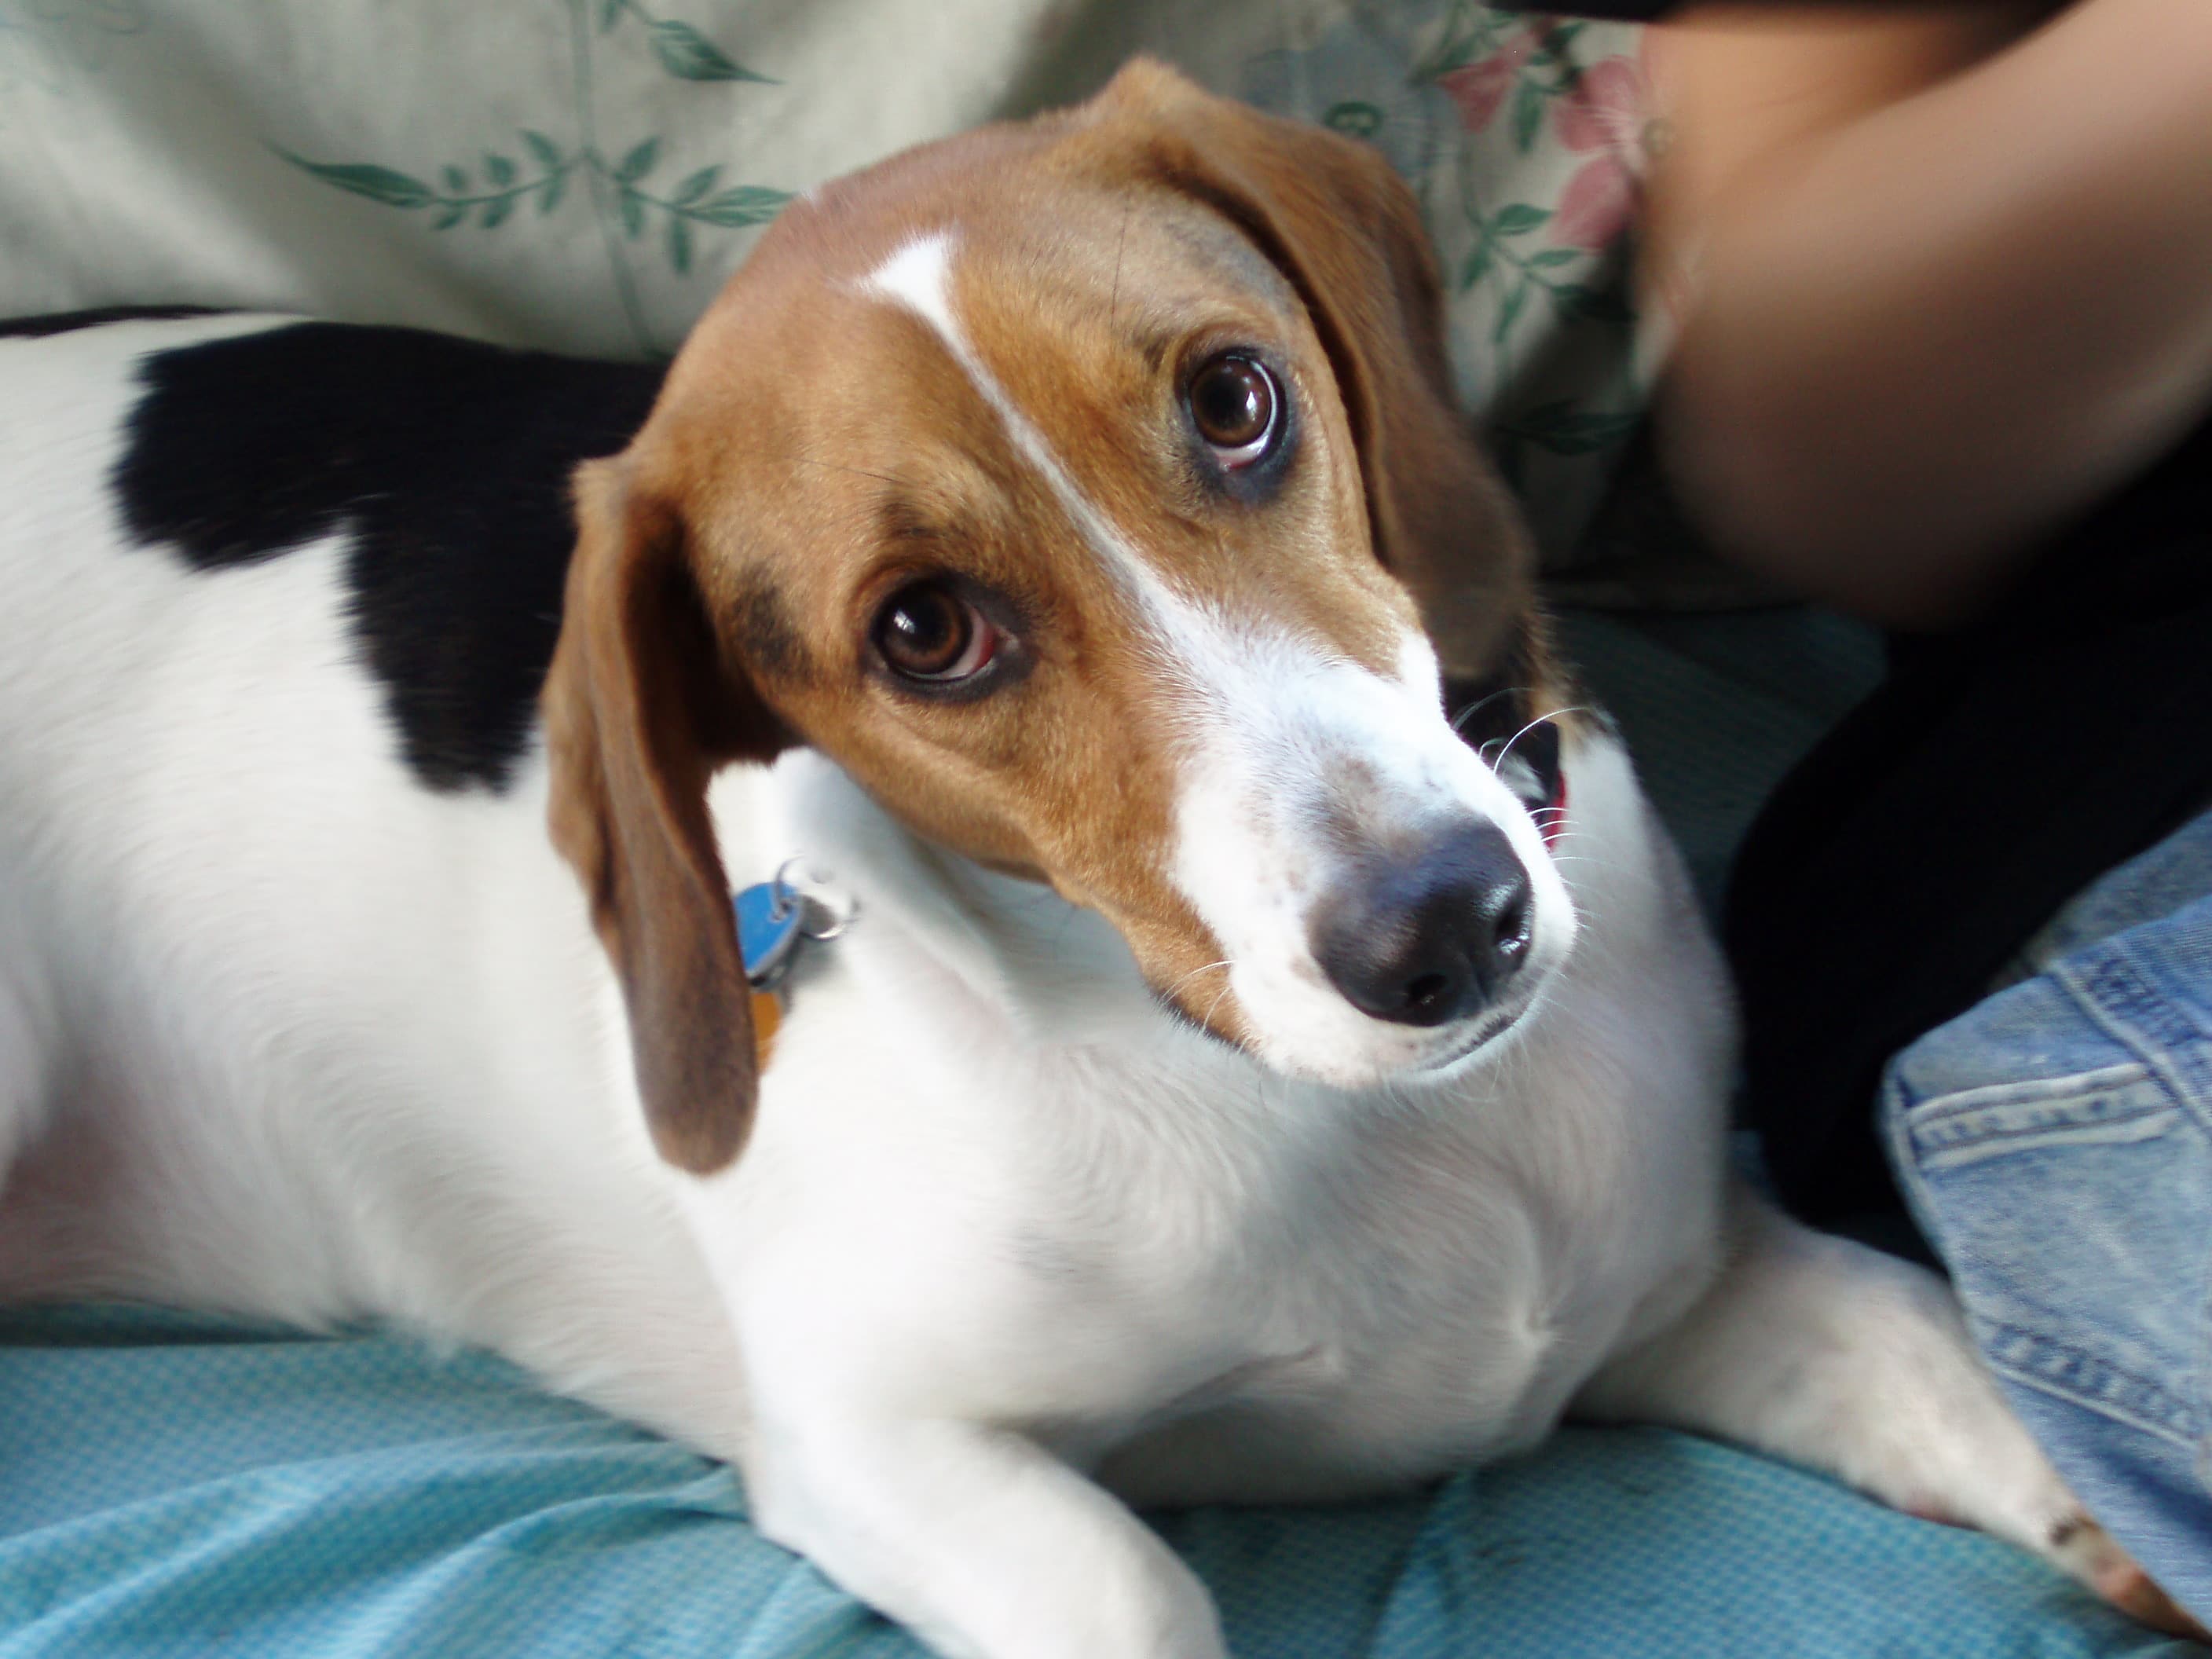 cute beagle with puppy dog eyes